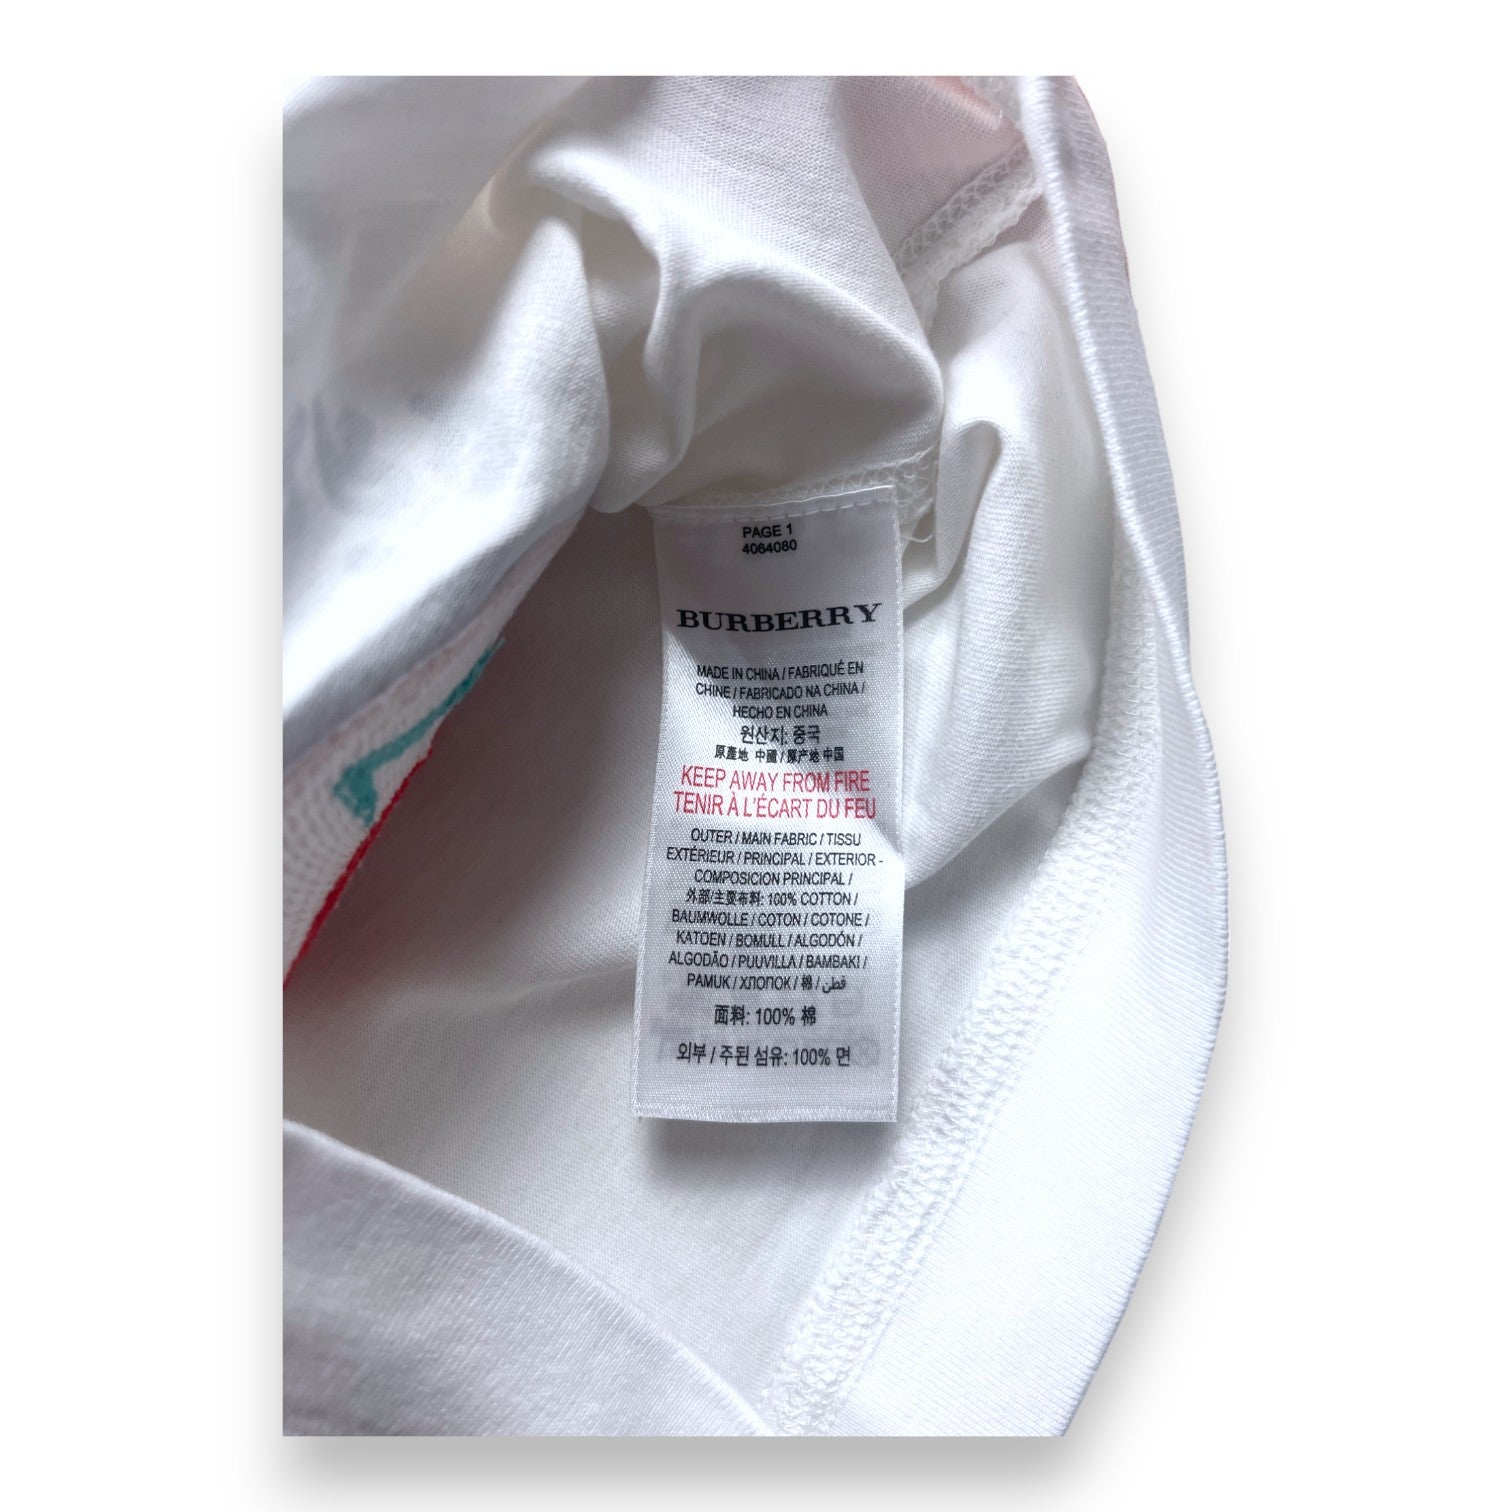 BURBERRY - T shirt blanc et rayé à motifs colorés en relief - 18 mois